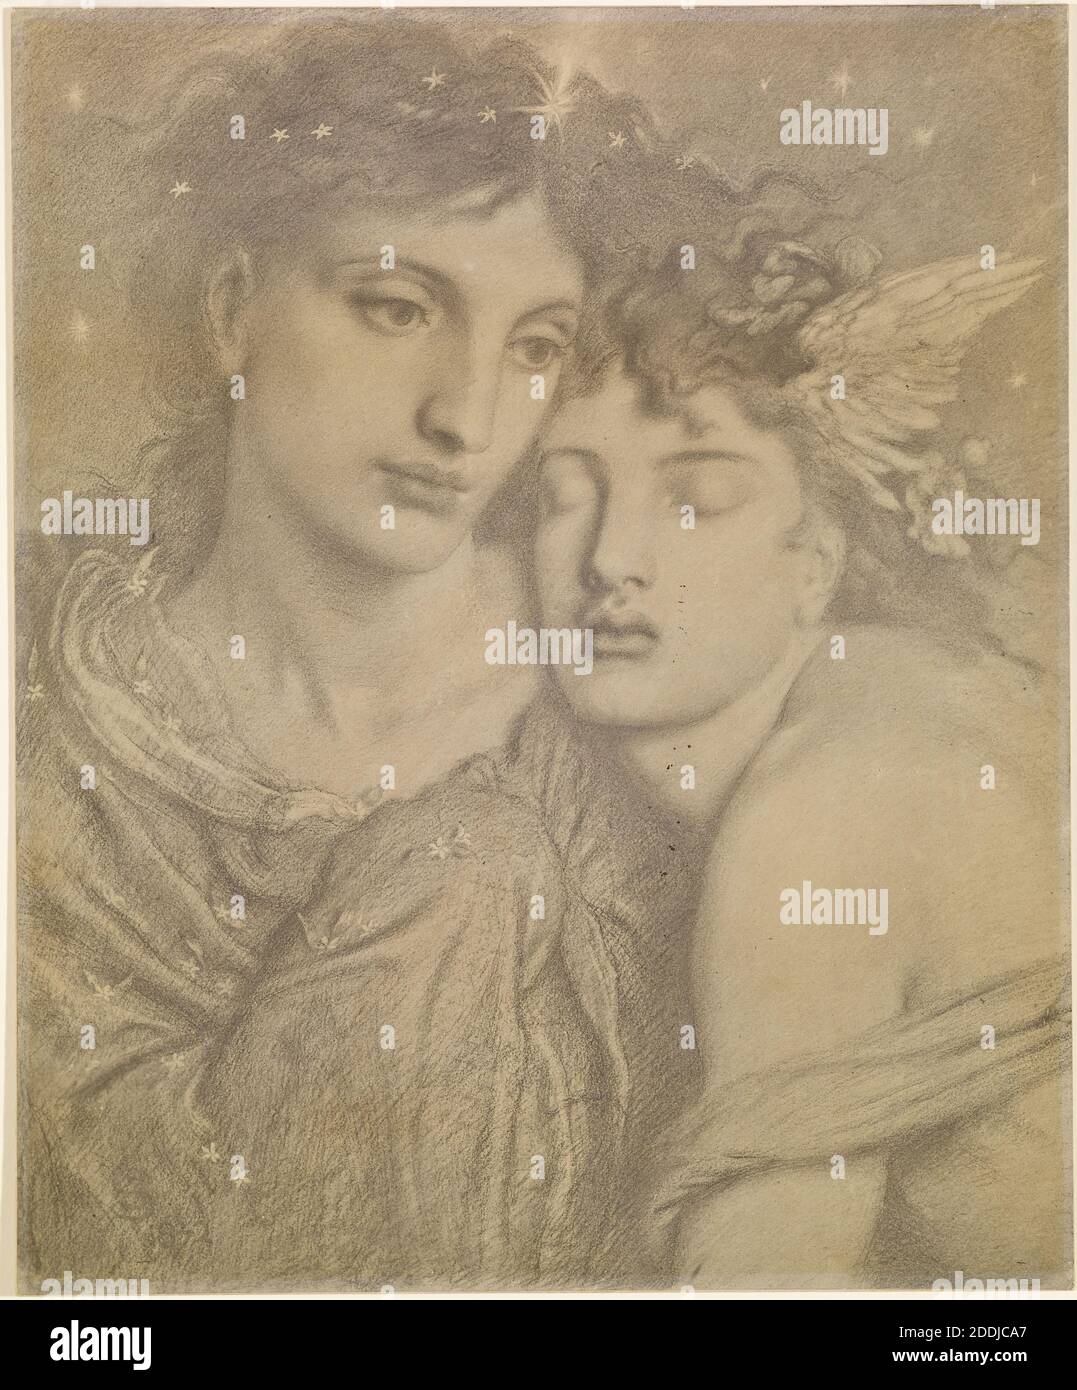 Nacht und Schlaf, 1872 Fotograf: Frederick Hollyer nach Simeon Solomon, Kunstbewegung, Präraffaelite, Platin-Druck Stockfoto